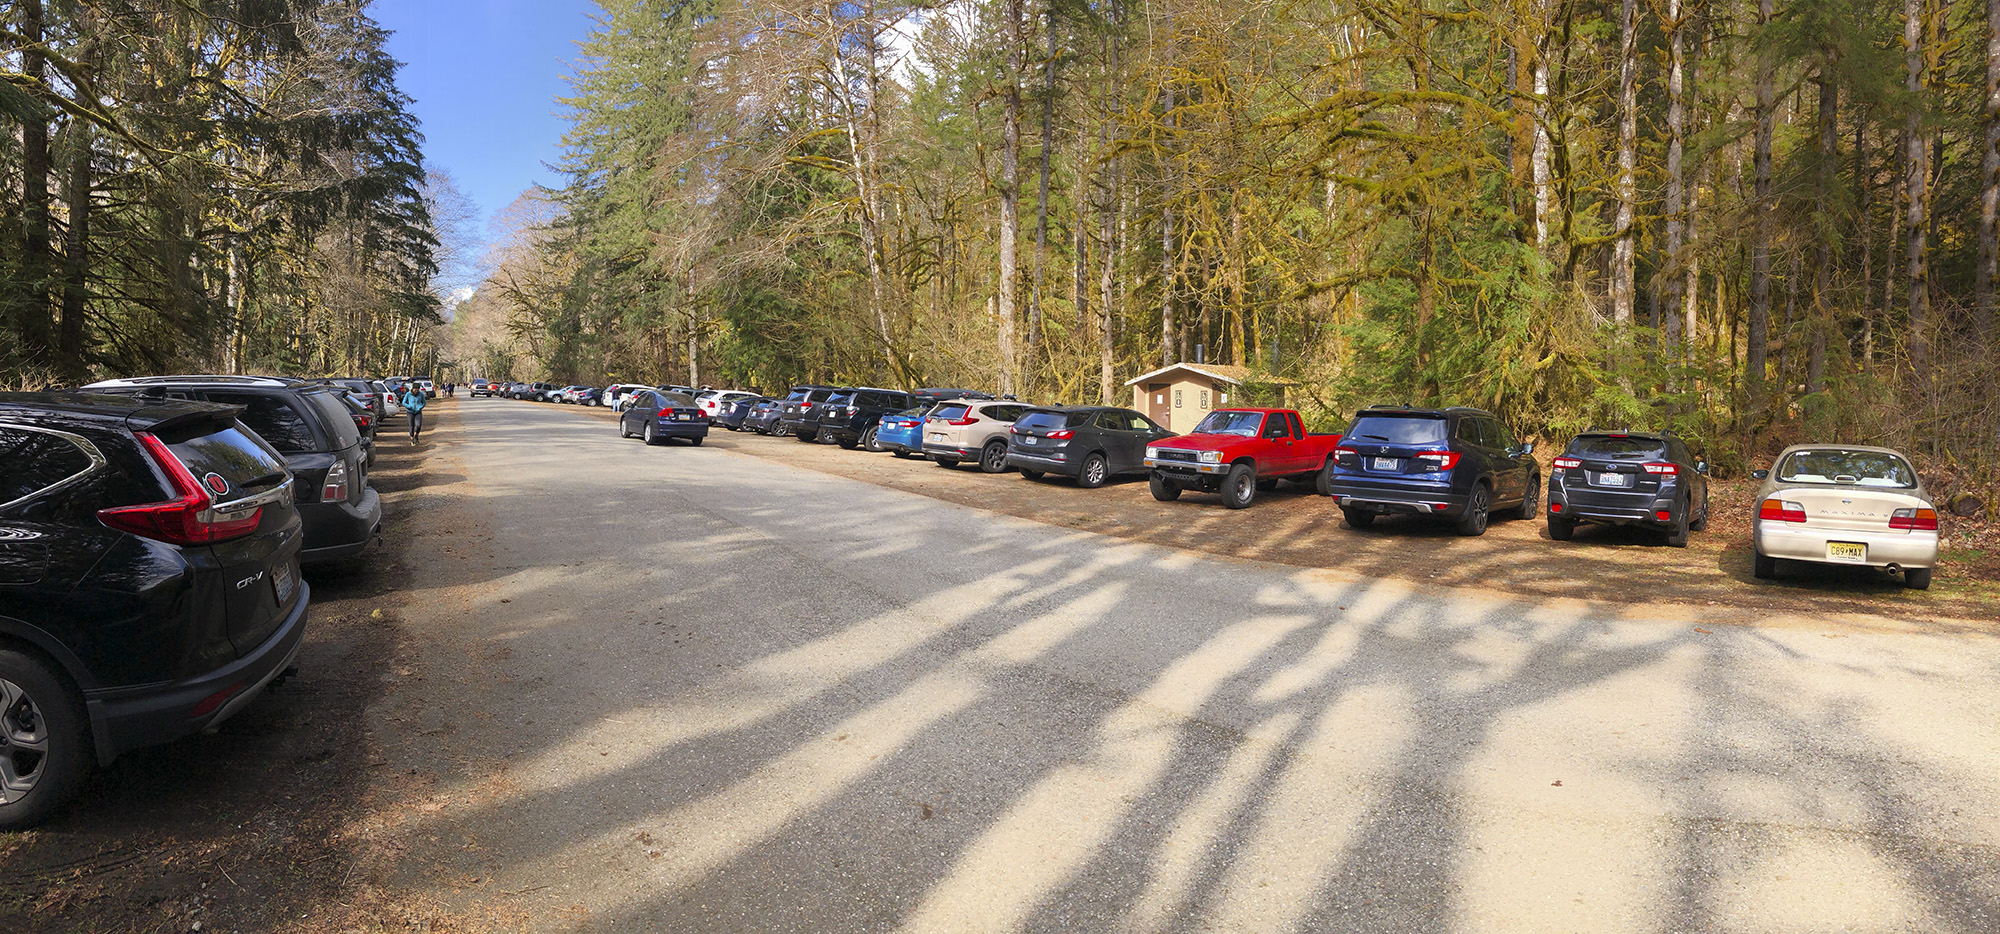 Full parking loot at a trailhead